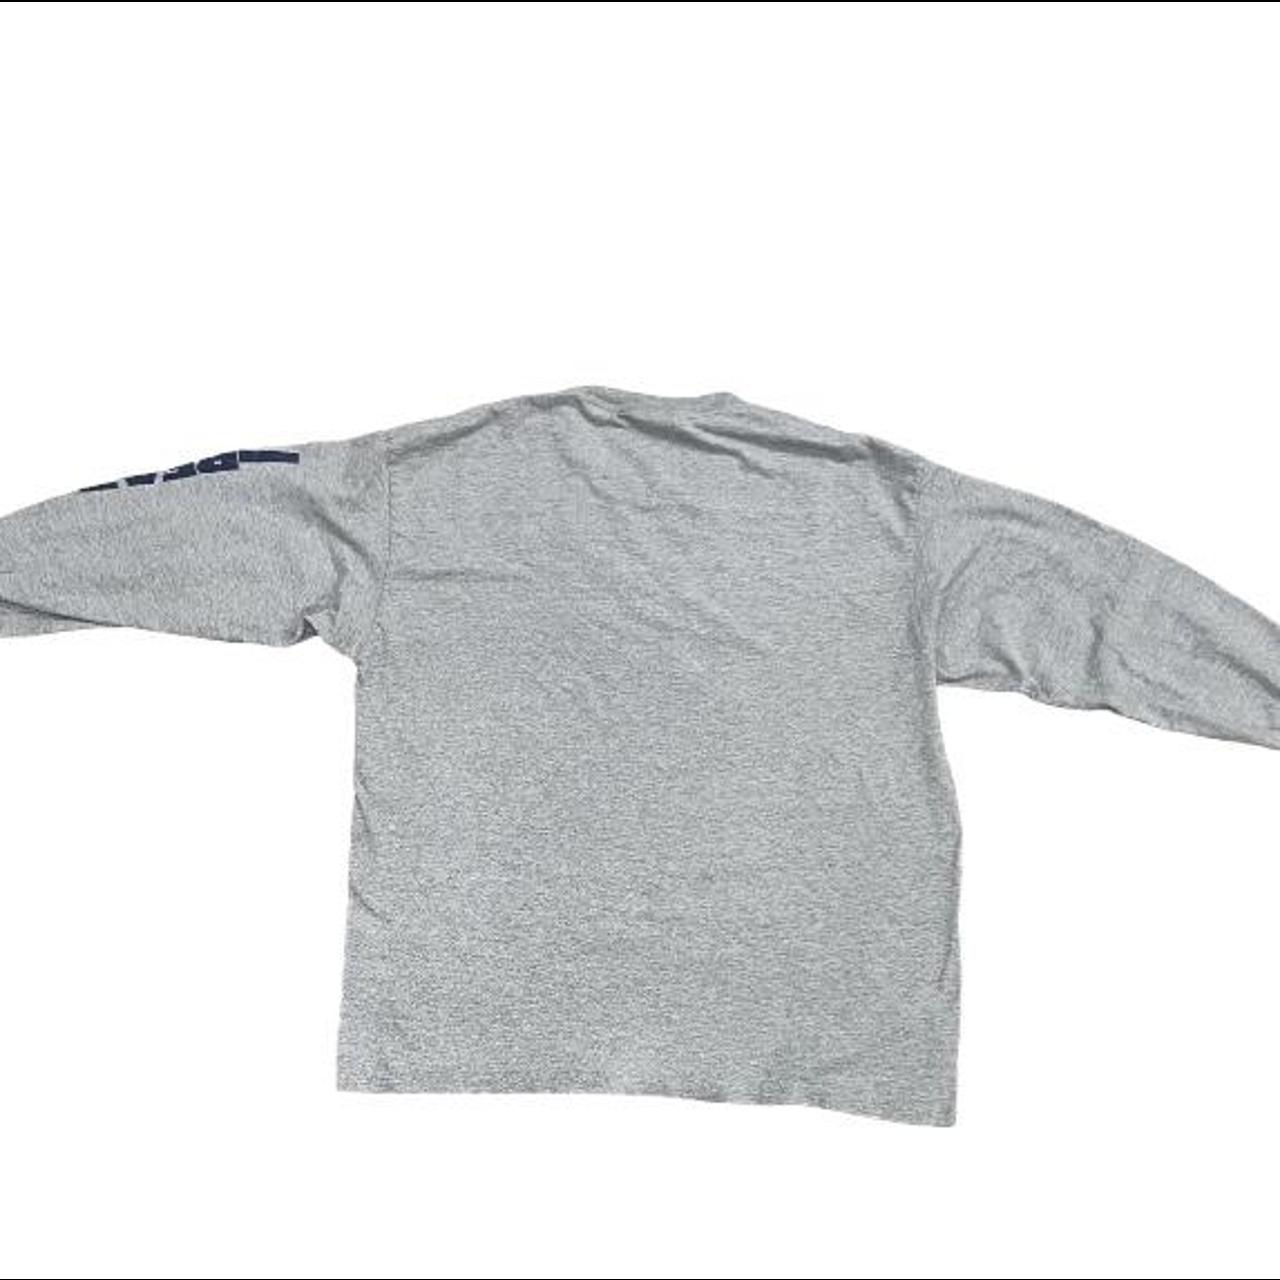 NFL Men's Grey T-shirt (3)